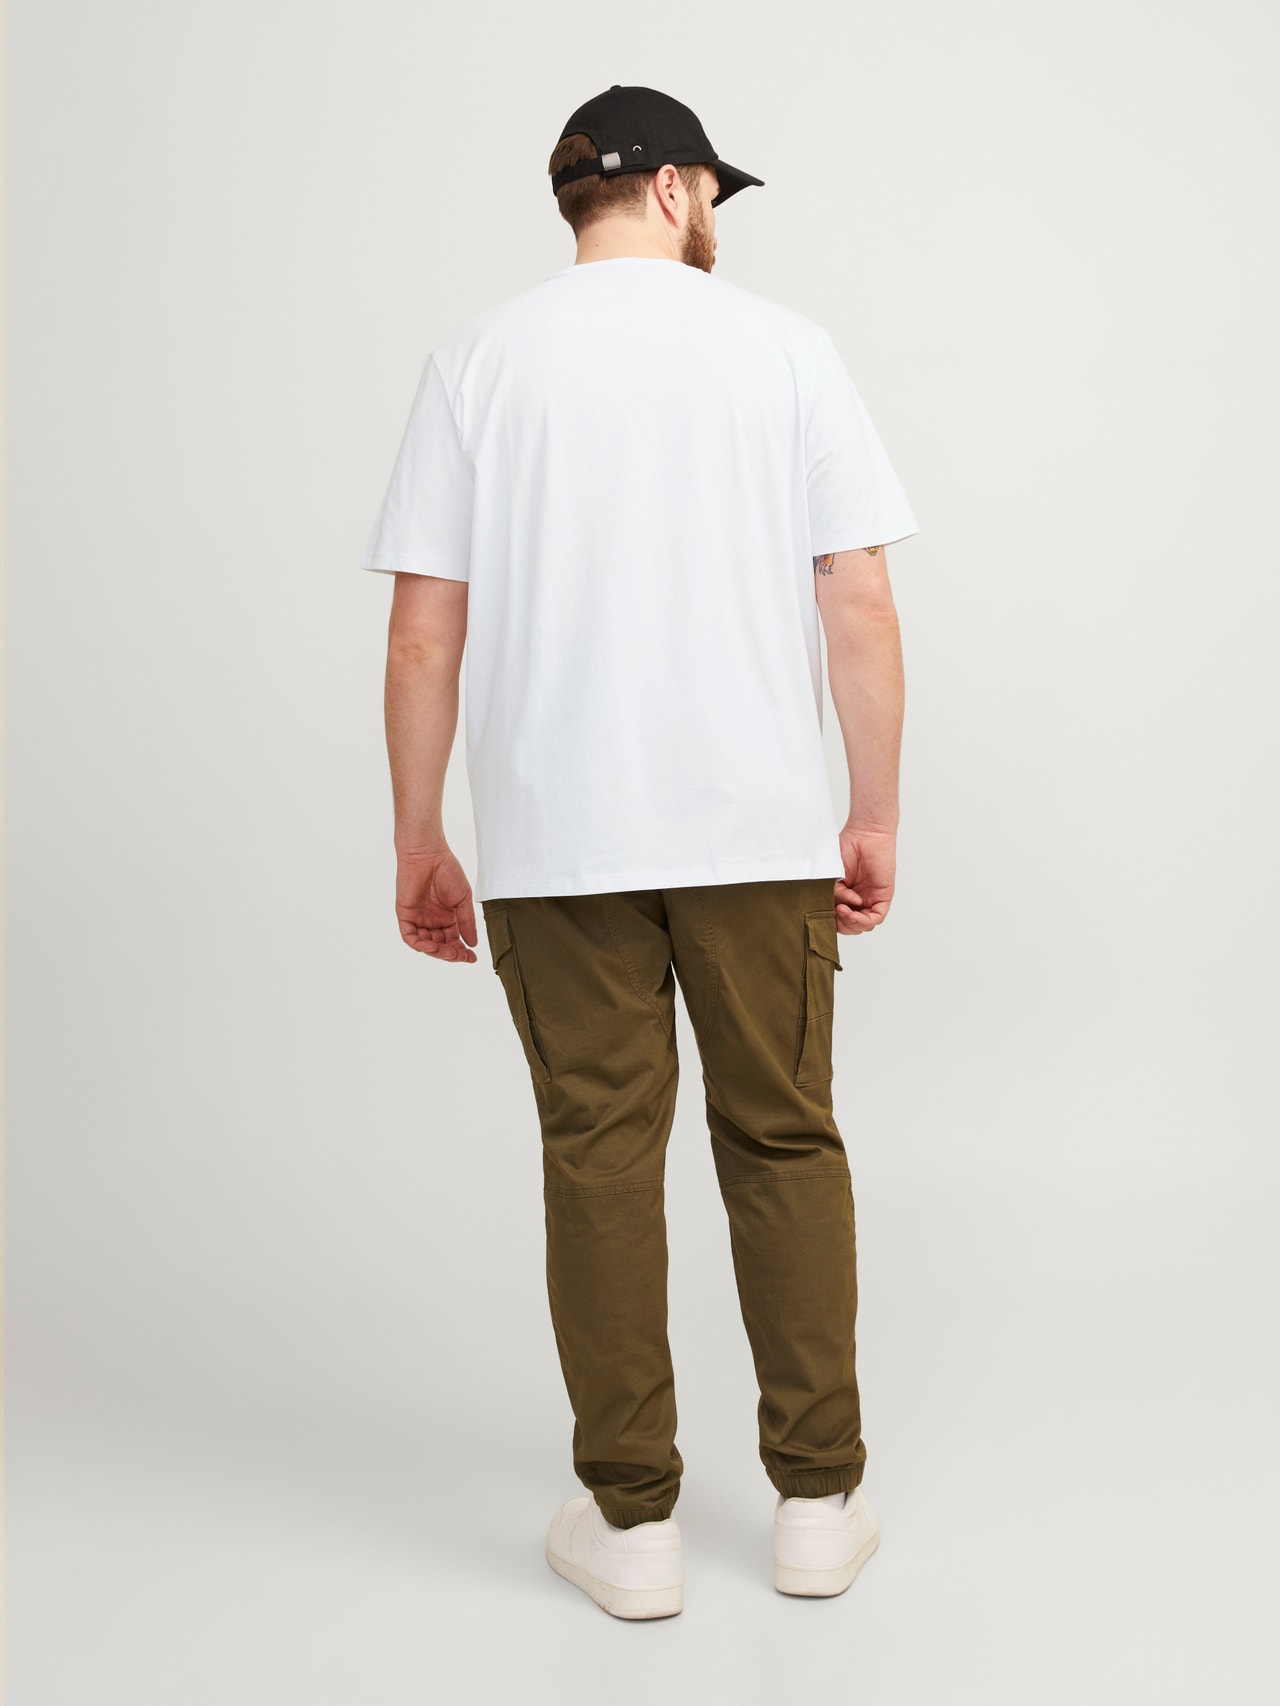 Jack & Jones Plus Size Plain T-shirt -White - 12253778